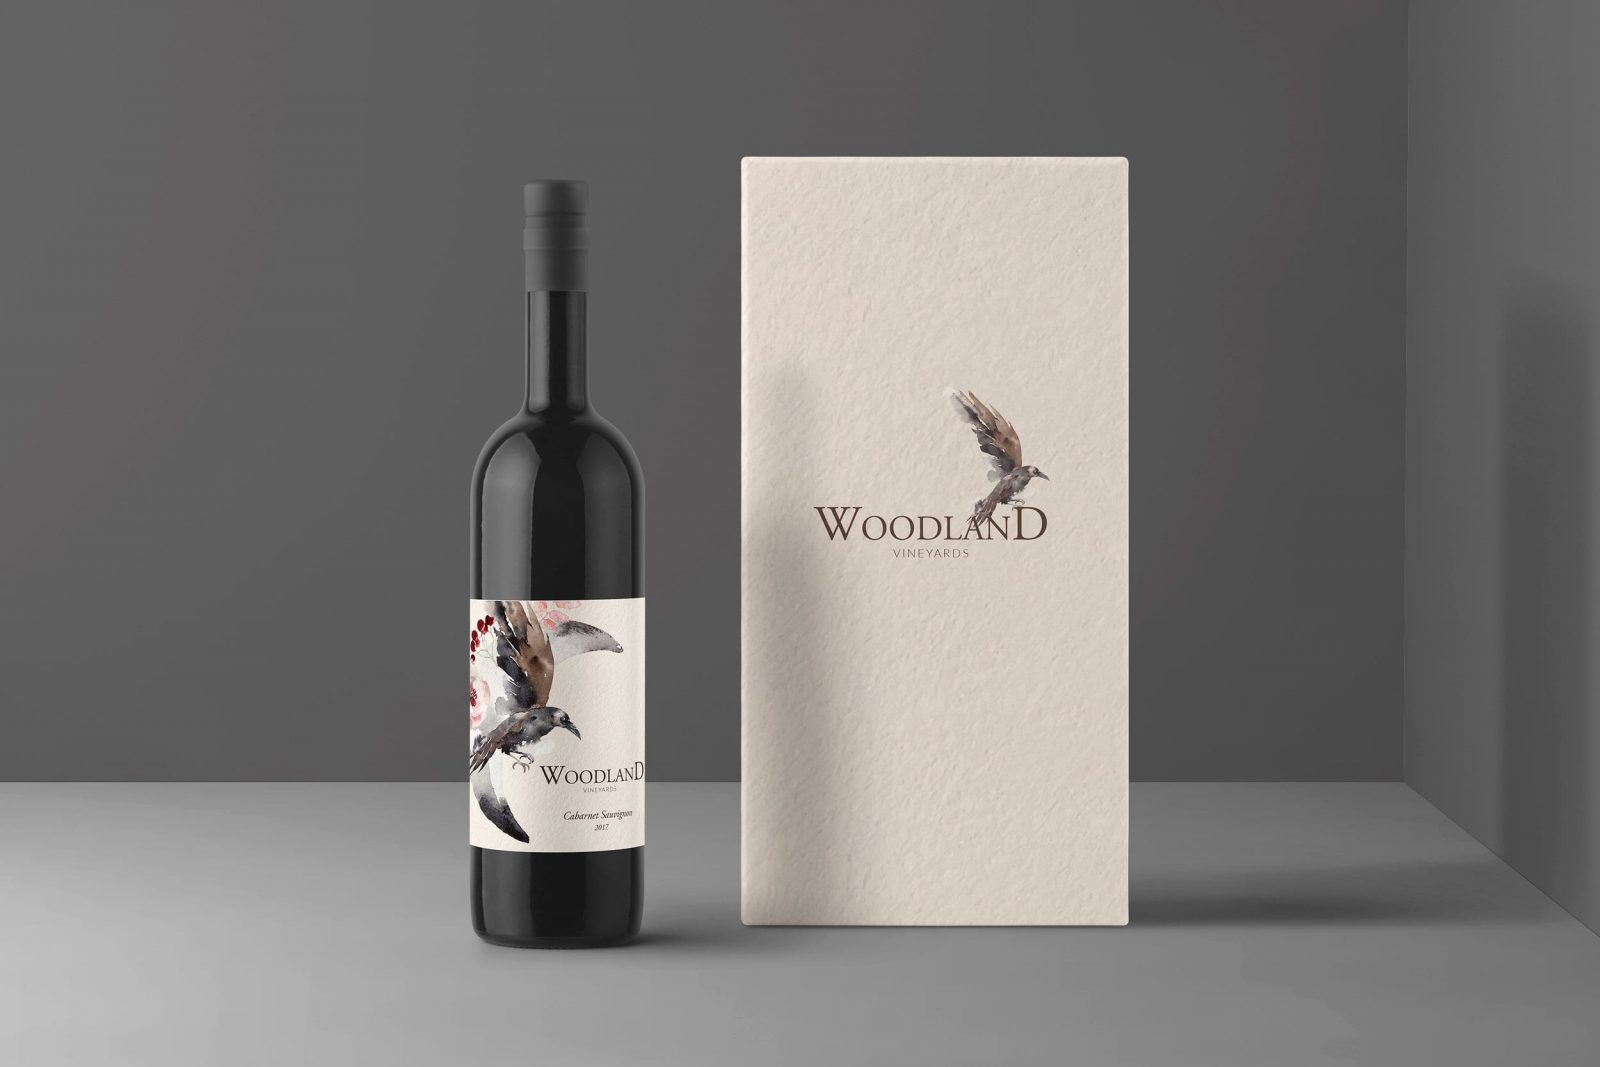 Wine Bottle Label Design, Business card Design and Print Designs for Woodland Vineyards